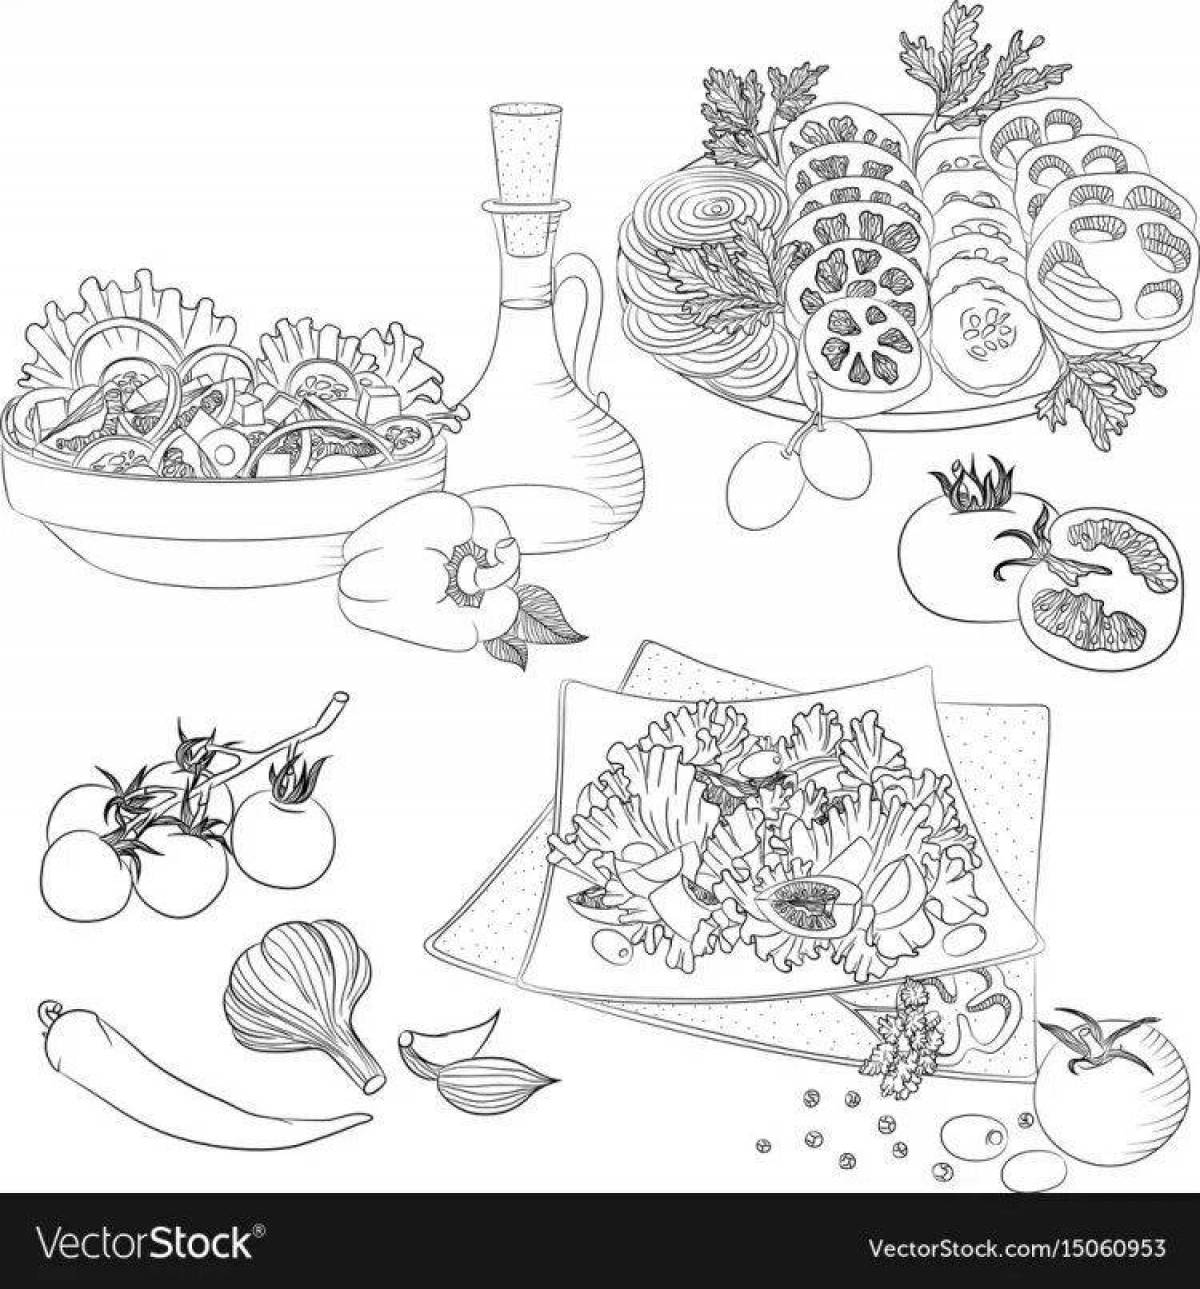 Delicious caesar salad coloring page